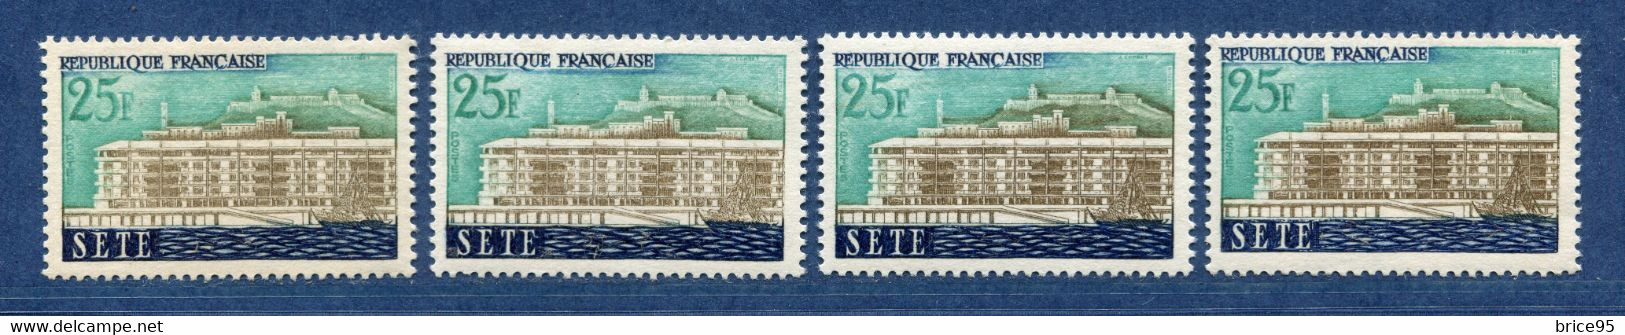 ⭐ France - Variété - YT N° 1155 - Couleurs - Pétouille - Neuf Sans Charnière - 1958 ⭐ - Unused Stamps